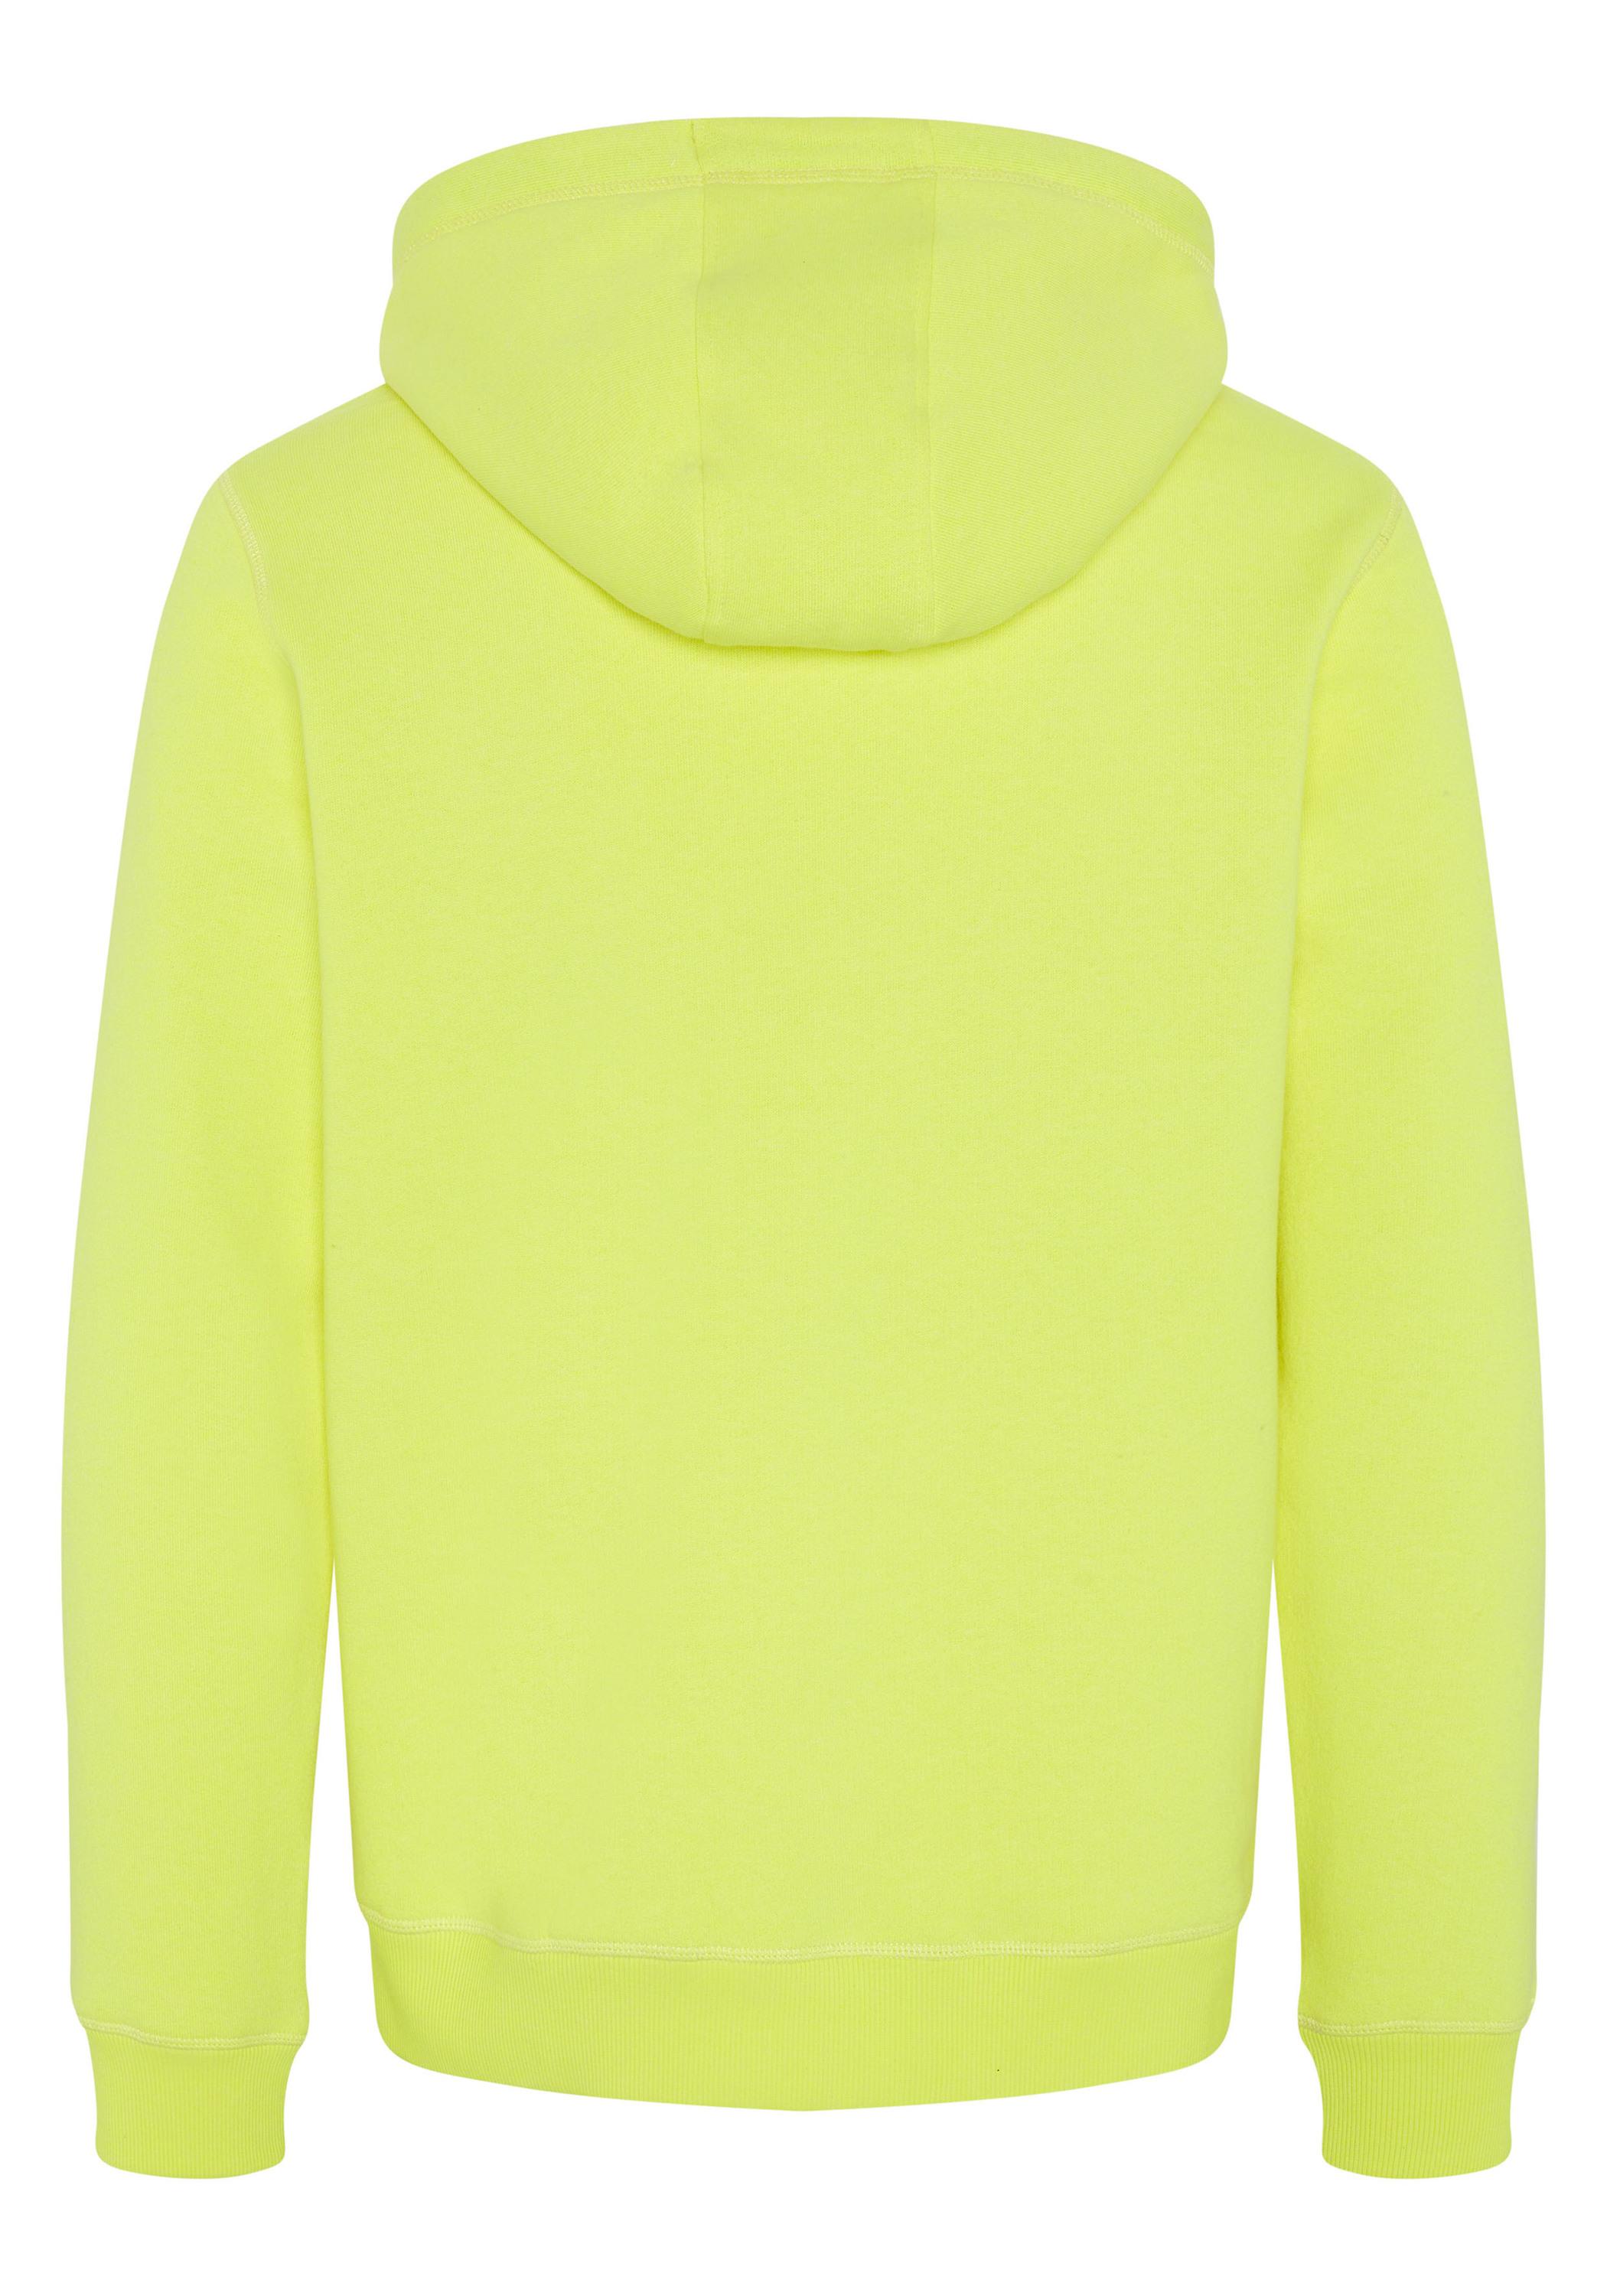 Sweatshirt Shop kaufen von Online Kapuzensweatshirt im Yellow Herren Safety Chiemsee SportScheck